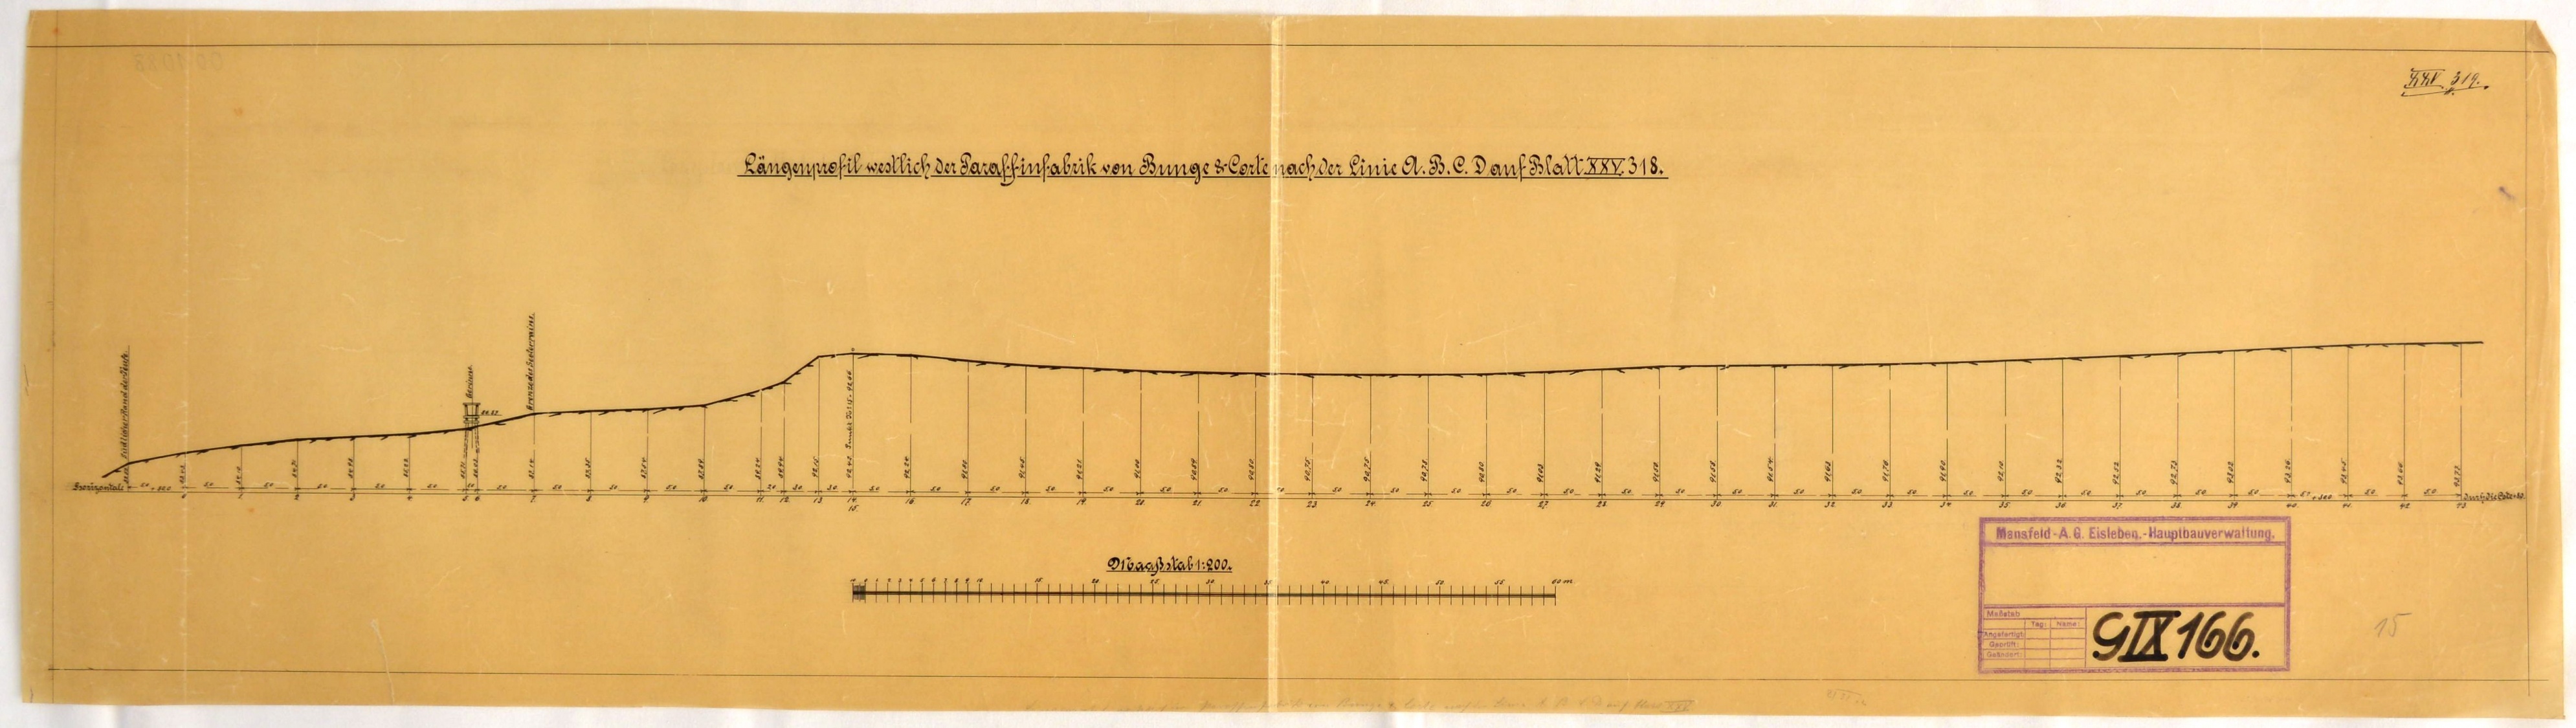 Längenprofil westlich der Paraffinfabrik von Bunge & Corte nach der Linie A, B, C, D auf Blatt XXV. 318. (Mansfeld-Museum im Humboldt-Schloss CC BY-NC-SA)